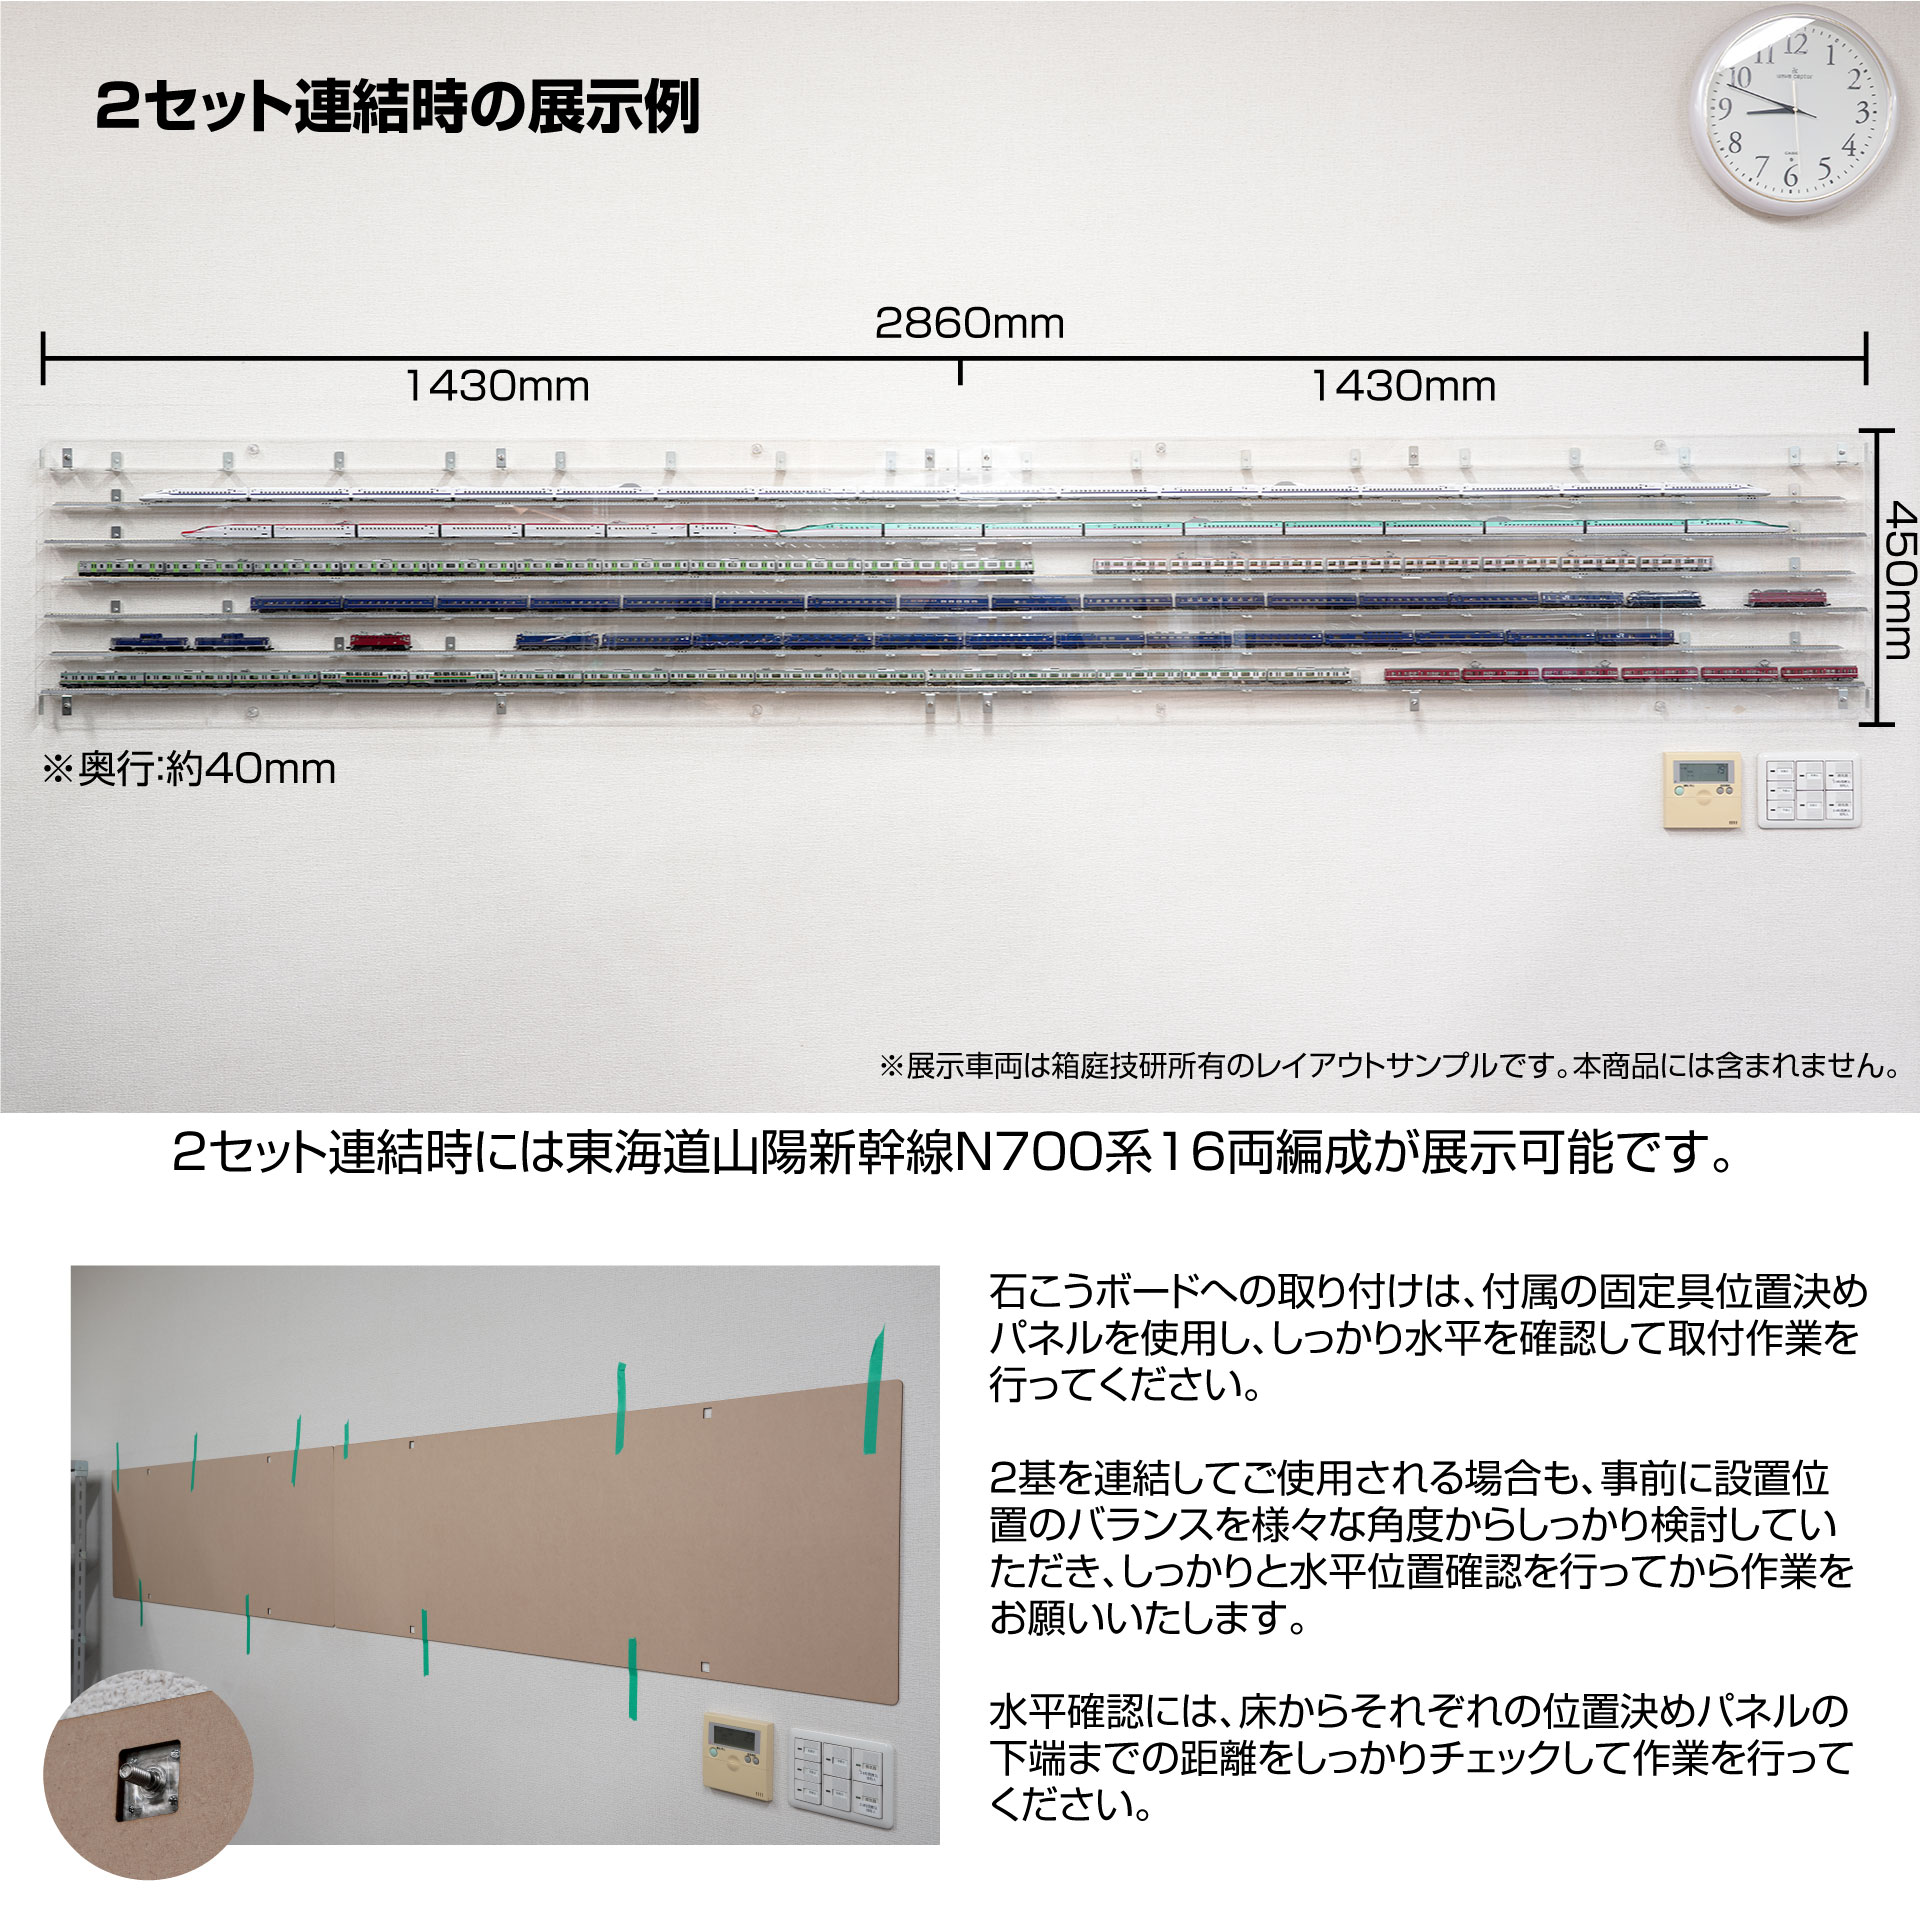 鉄道模型用 壁掛け式UVカットアクリルディスプレイケース WMDS-LC-001 [箱庭技研]